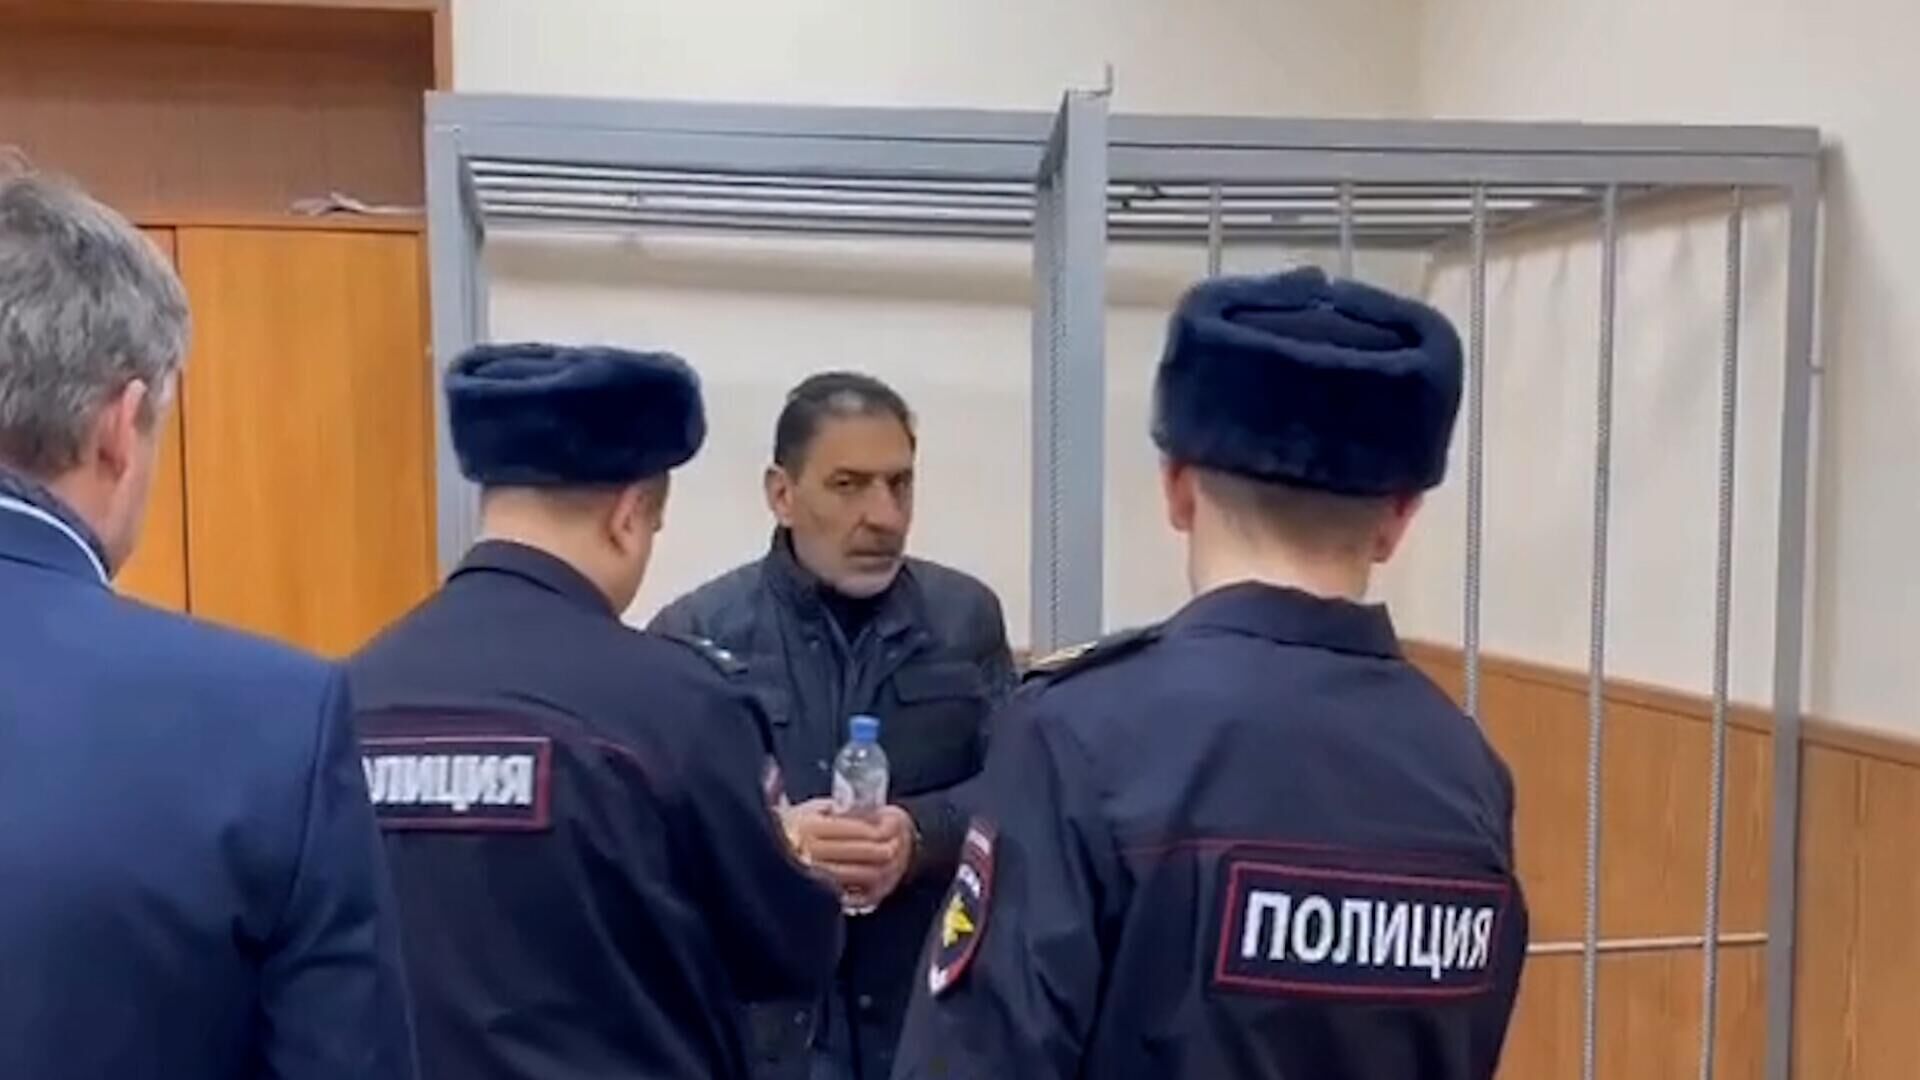 Адвокат мирзоева попросил. Ихтияр Мирзоев Кострома. Суд арест. Депутат Мирзоев. Фотография под арестом.